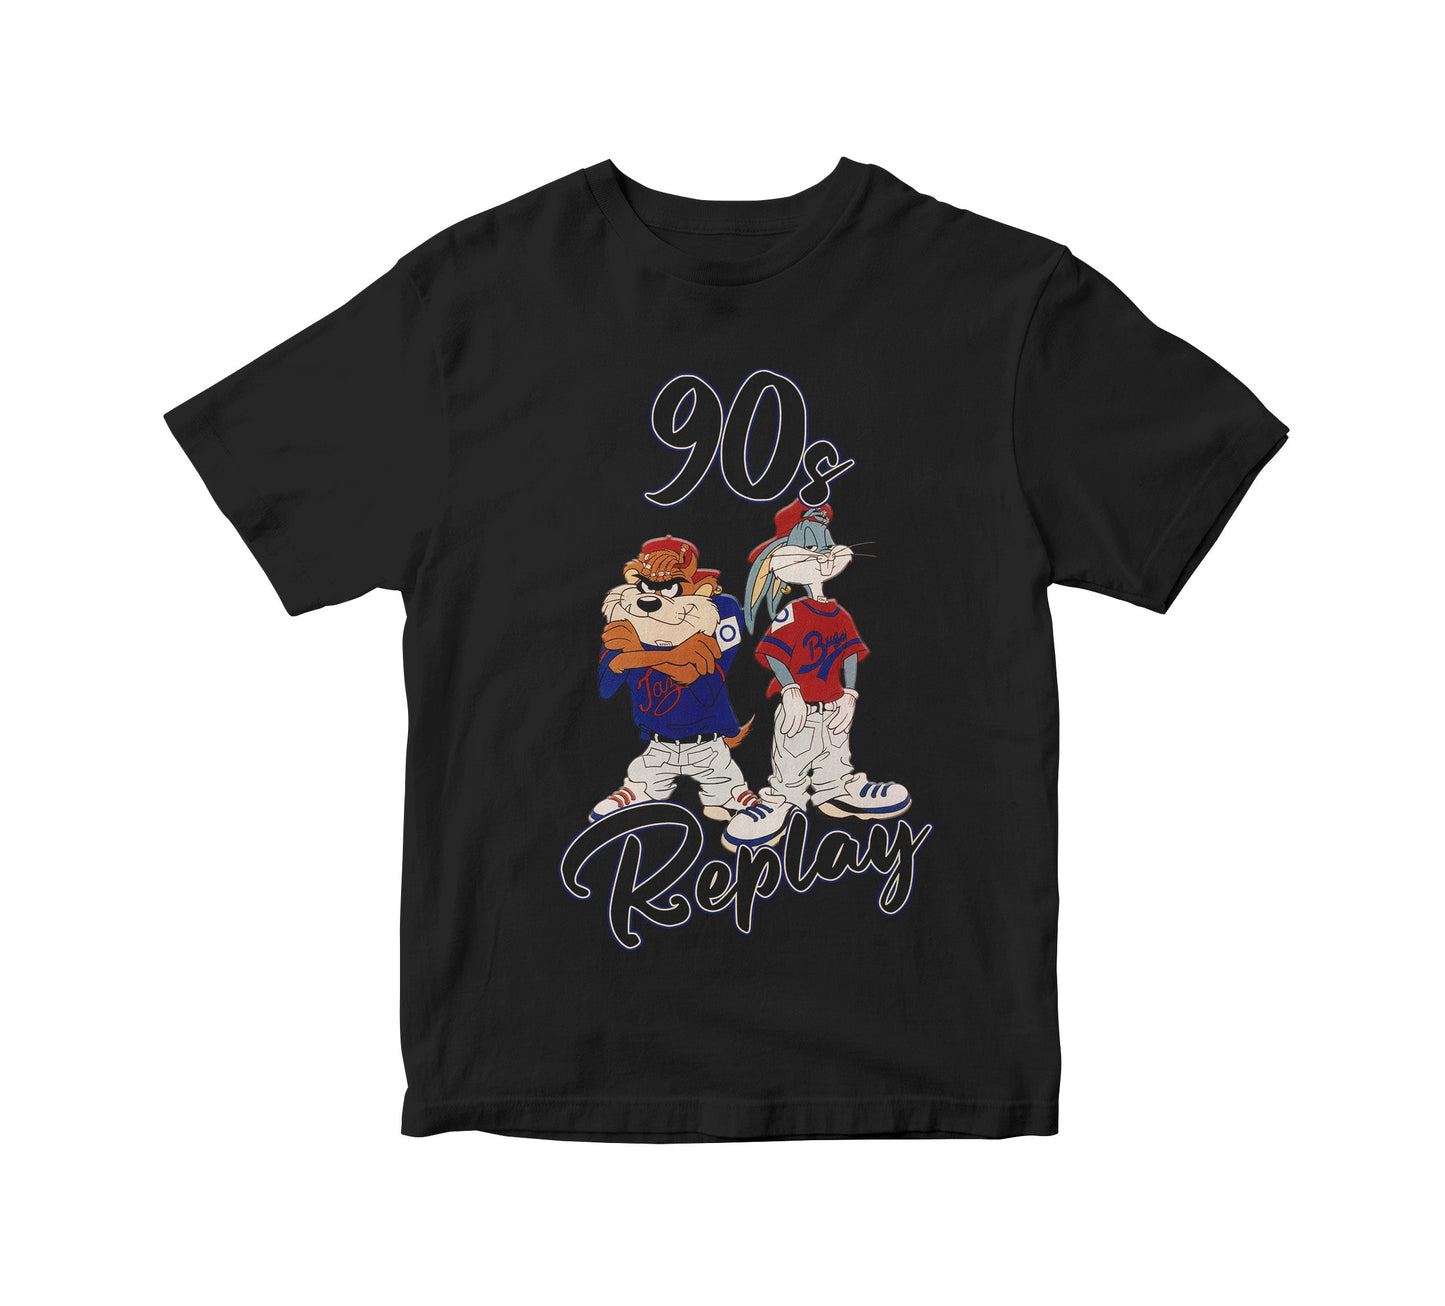 90s Replay Retro Kids Unisex T-Shirt